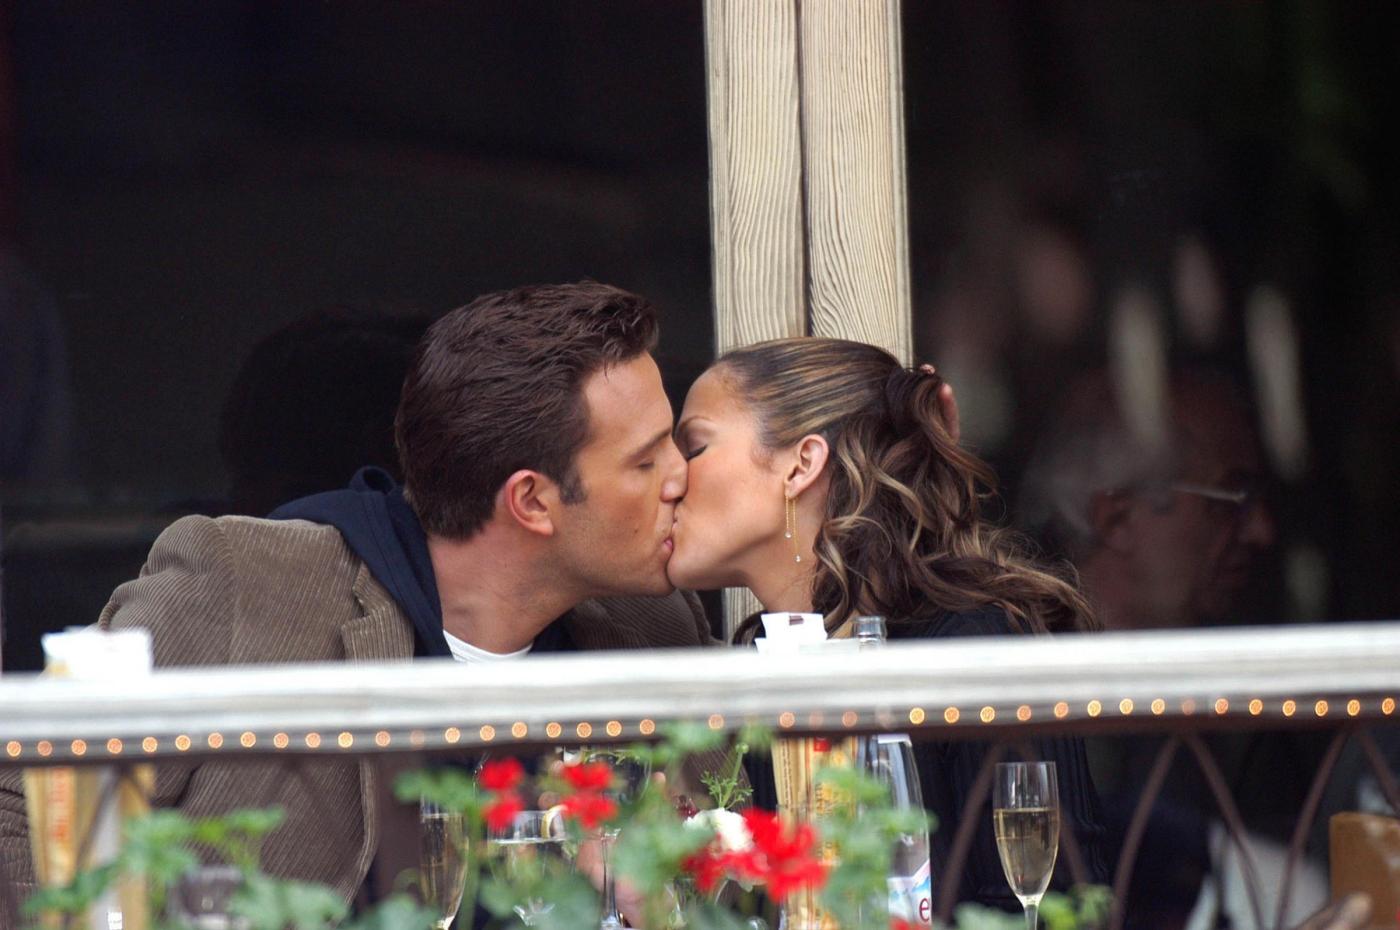 Un video immortala il bacio tra Ben Affleck e Jennifer Lopez: è di nuovo amore tra la coppia che si era lasciata nel 2004 a pochi giorni dal matrimonio. I fan sono in visibilio